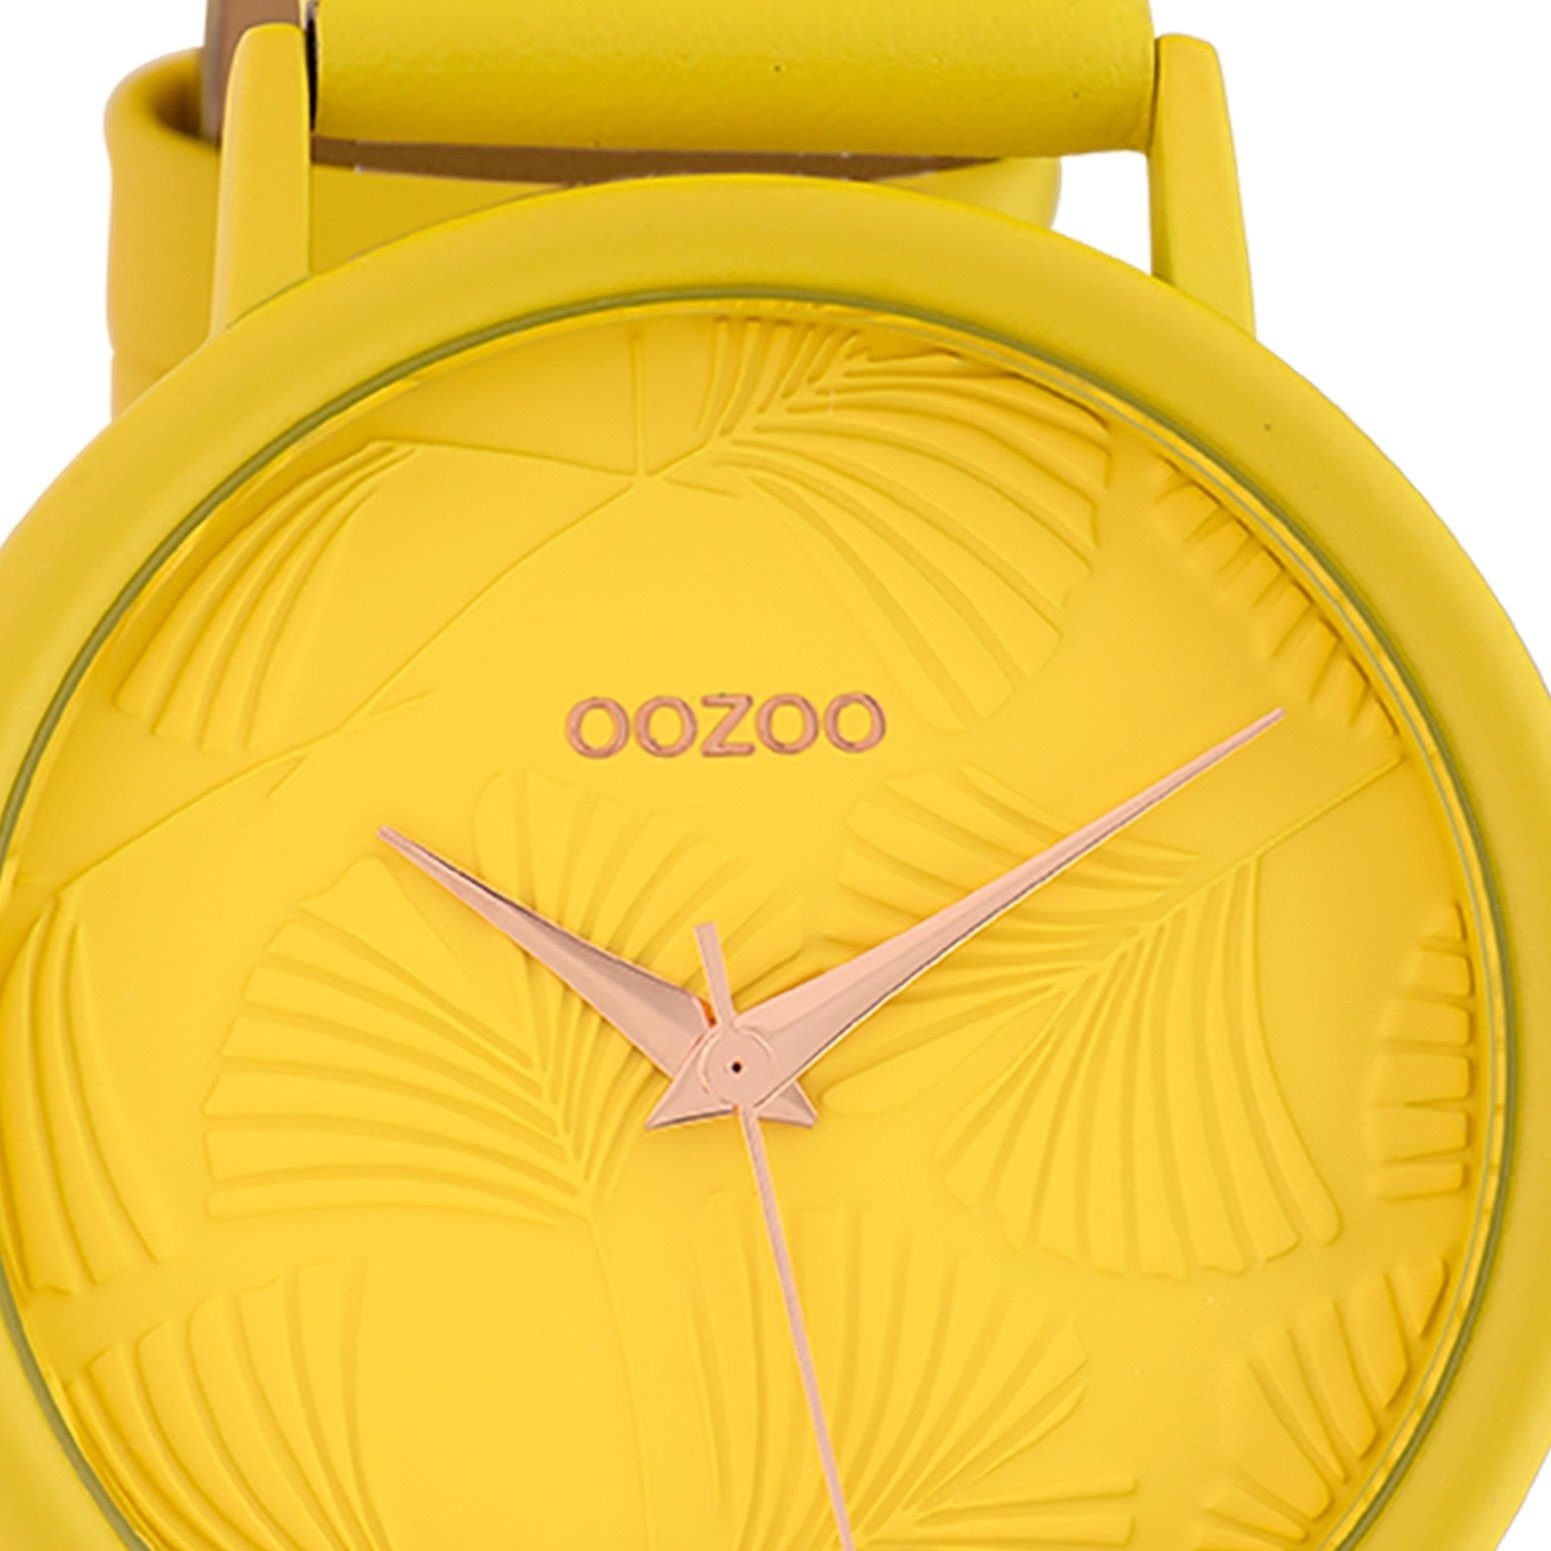 Oozoo gelb, Damen Lederarmband groß Damenuhr rund, Fashion OOZOO gelb, Armbanduhr Quarzuhr (ca. 42mm),